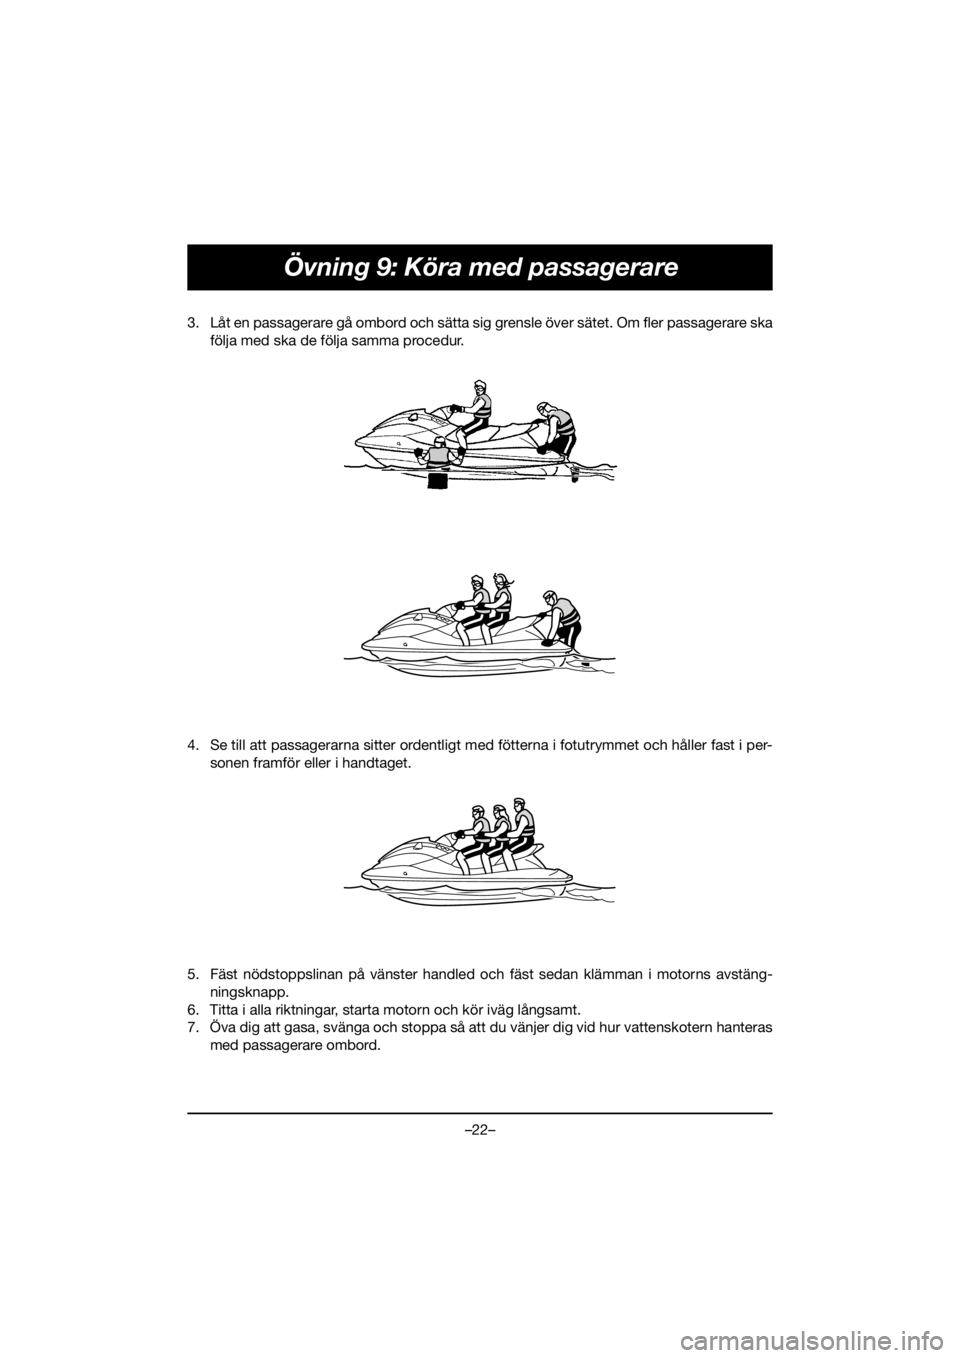 YAMAHA GP1800R SVHO 2020  Manuale duso (in Italian) –22–
Övning 9: Köra med passagerare
3. Låt en passagerare gå ombord och sätta sig grensle över sätet. Om fler passagerare ska
följa med ska de följa samma procedur. 
4. Se till att passag